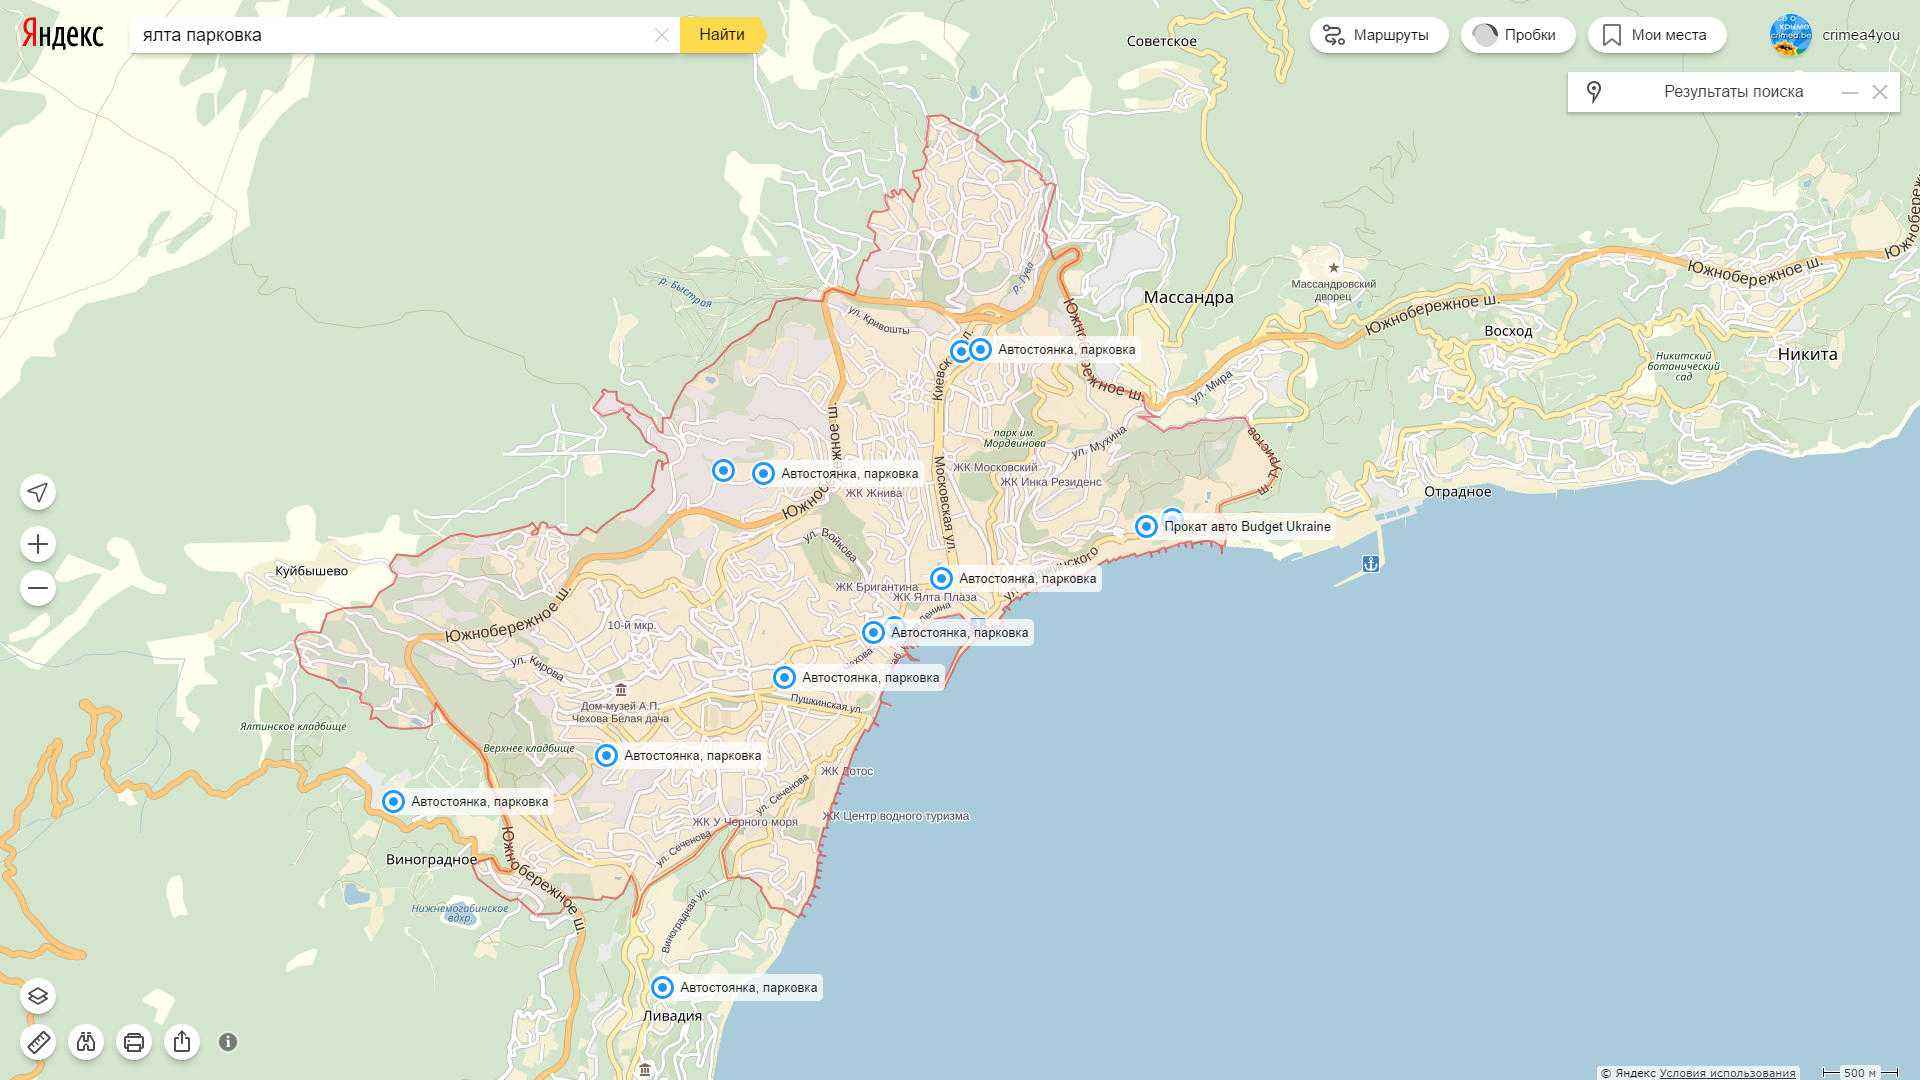 Царская солнечная тропа в крыму: схема маршрута, что посмотреть